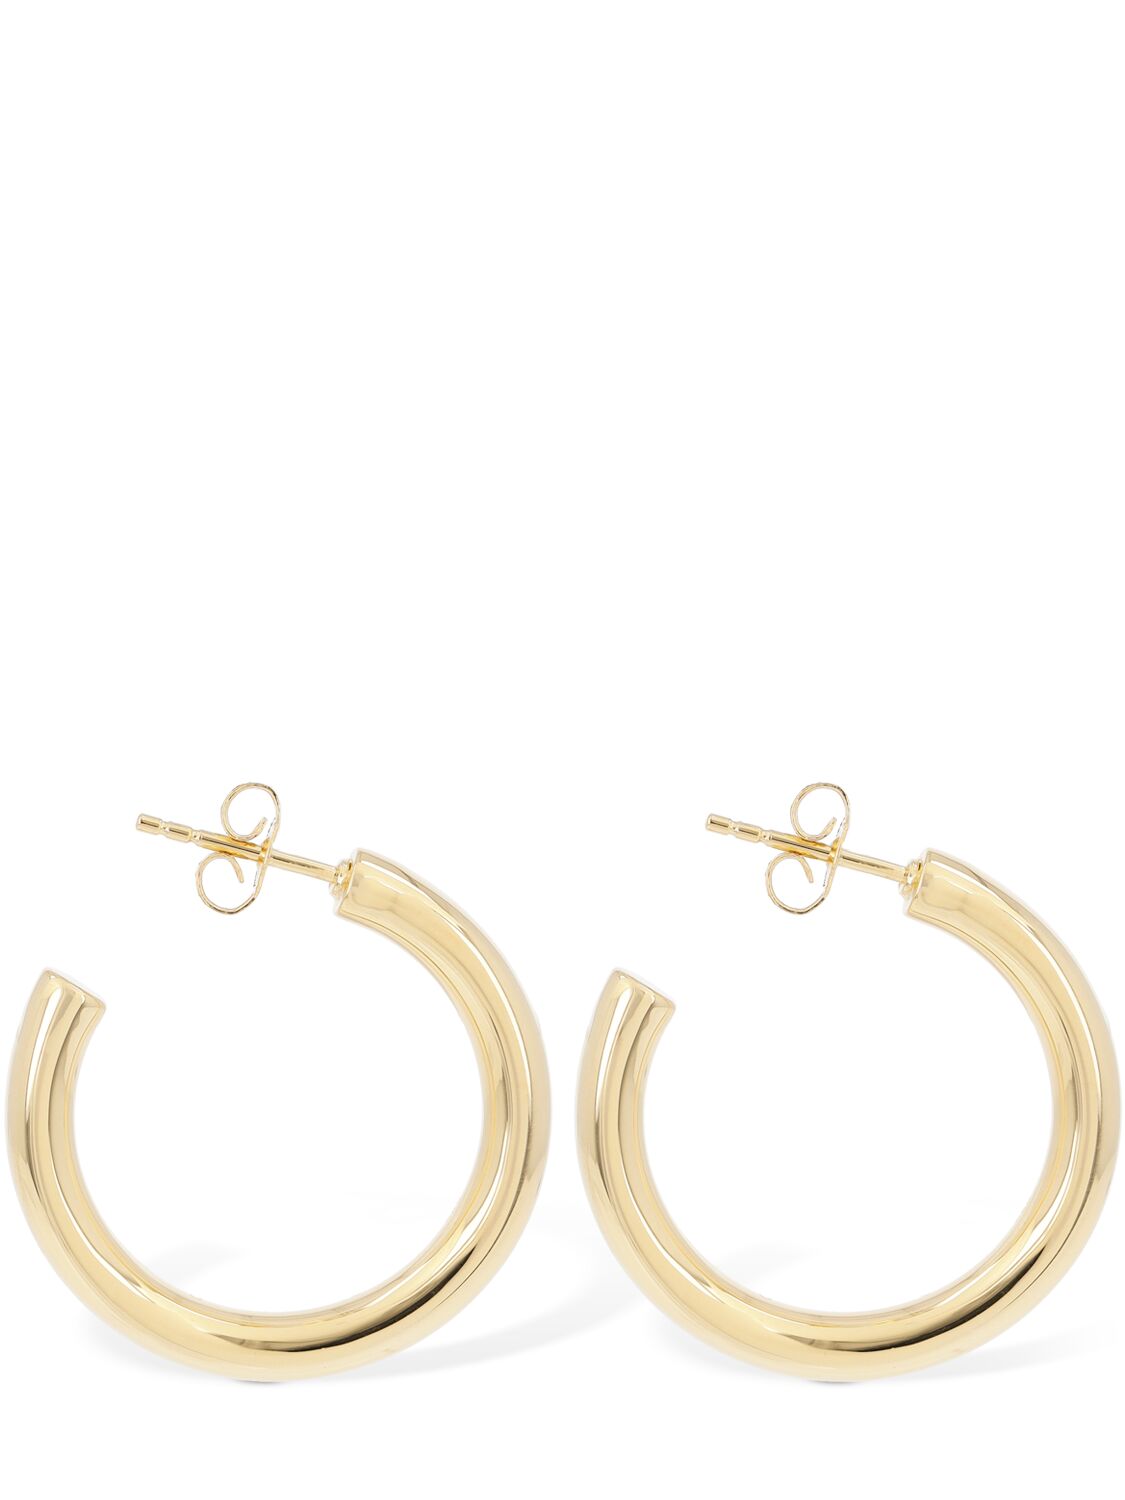 Image of Gold Chunky Hoop Earrings